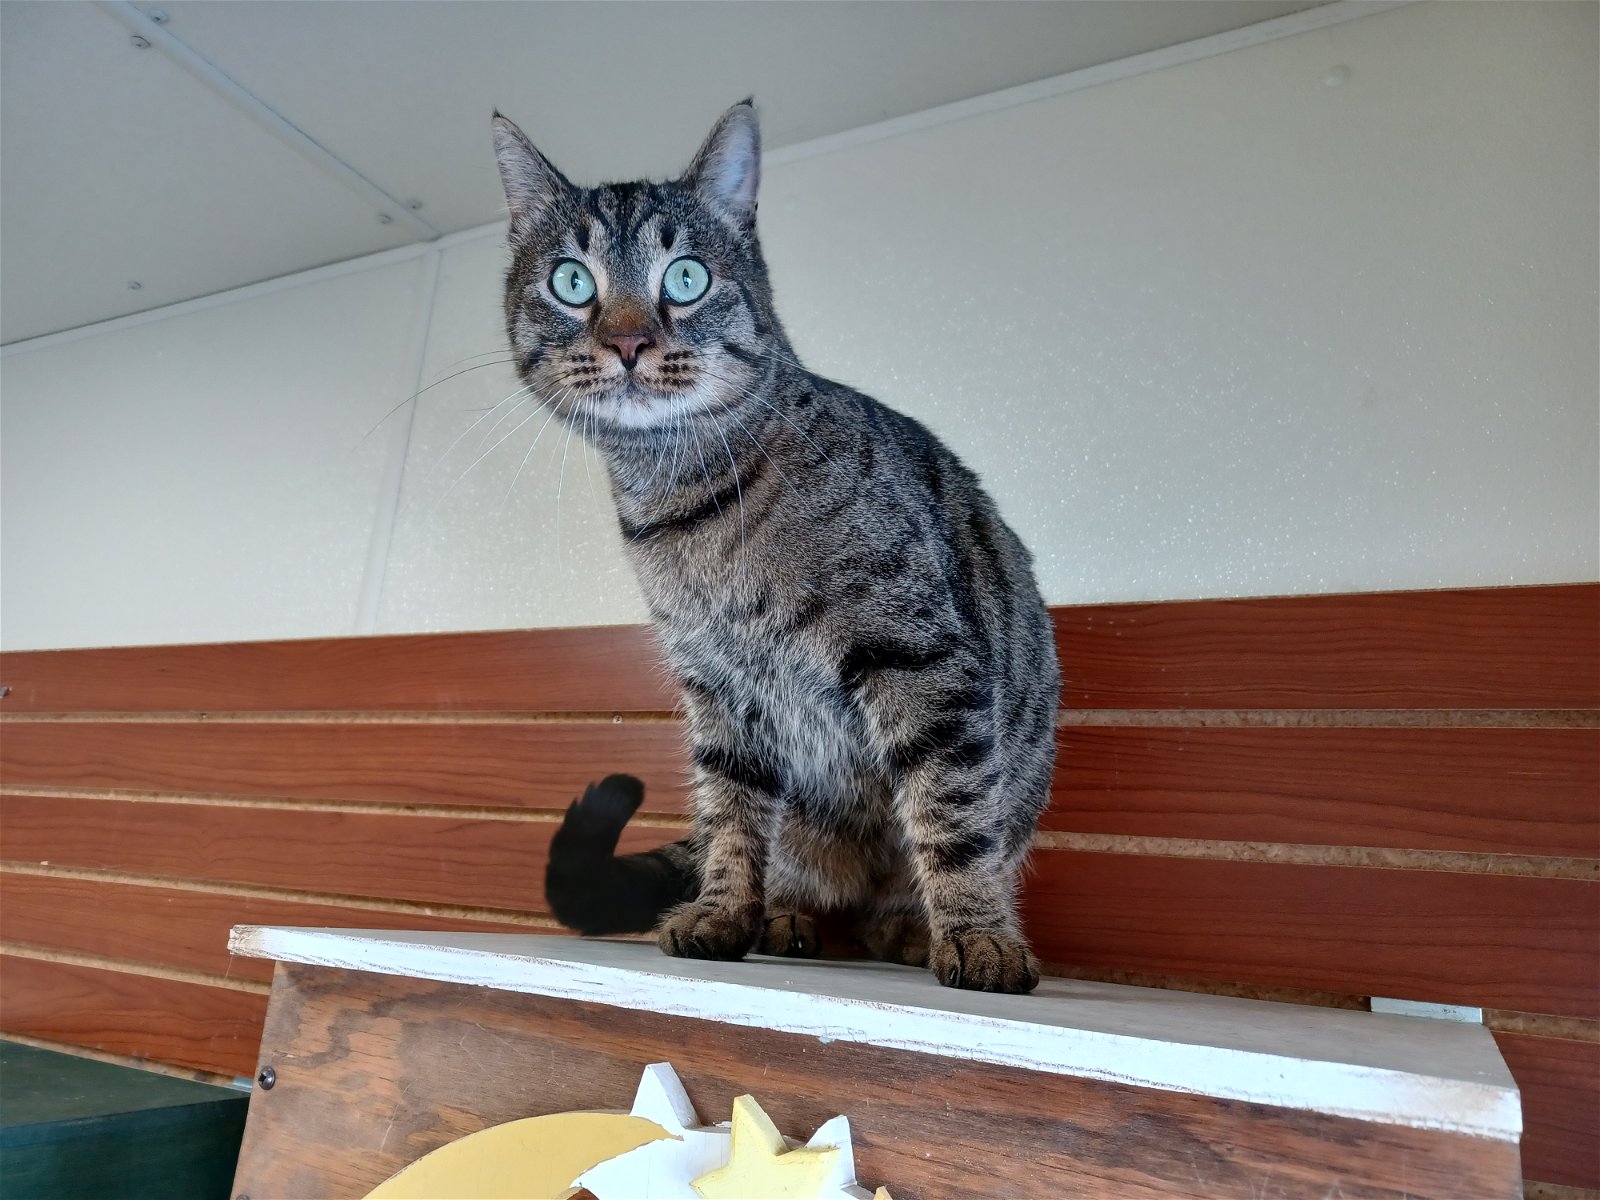 adoptable Cat in Austin, MN named Bagheera